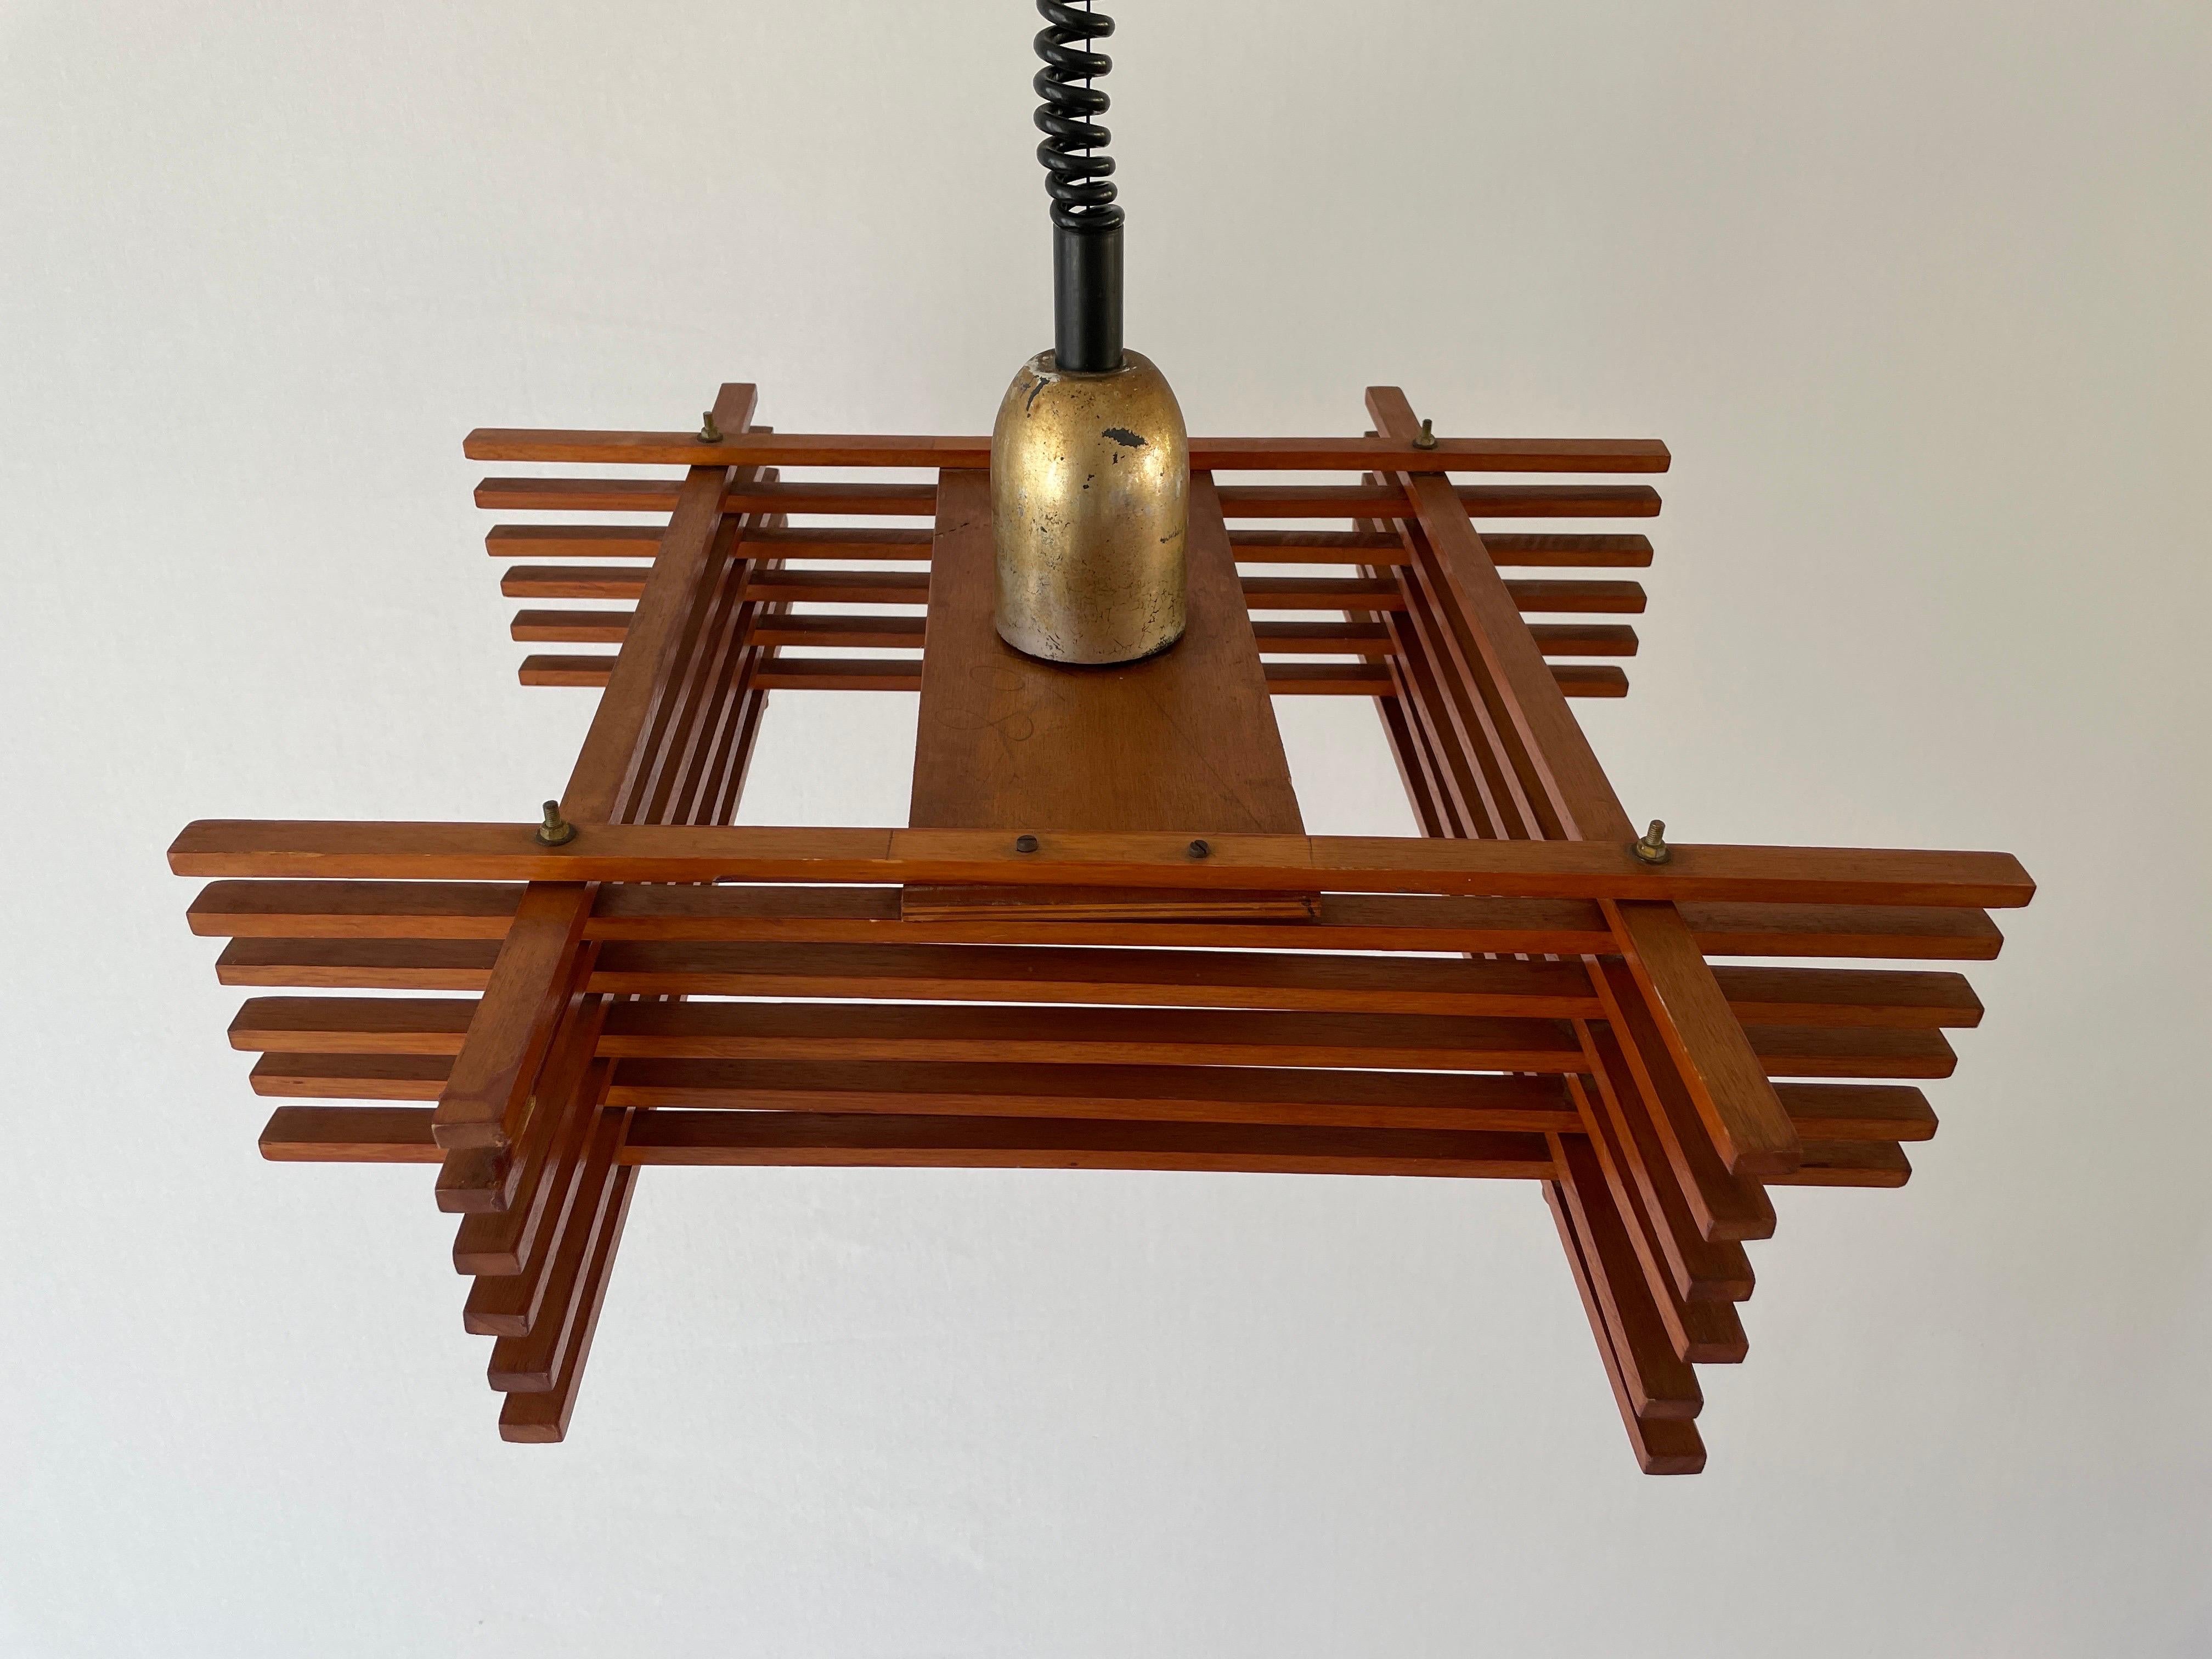 Verstellbare Mid-Century-Modern-Deckenleuchte aus Holz von Esperia, 1960er Jahre, Italien

Diese Lampe funktioniert mit E27-Glühbirnen.

Abmessungen: 
Schirm: 60 cm x 60 cm x 17 cm
Höhenverstellbar zwischen 72 - 167 cm


